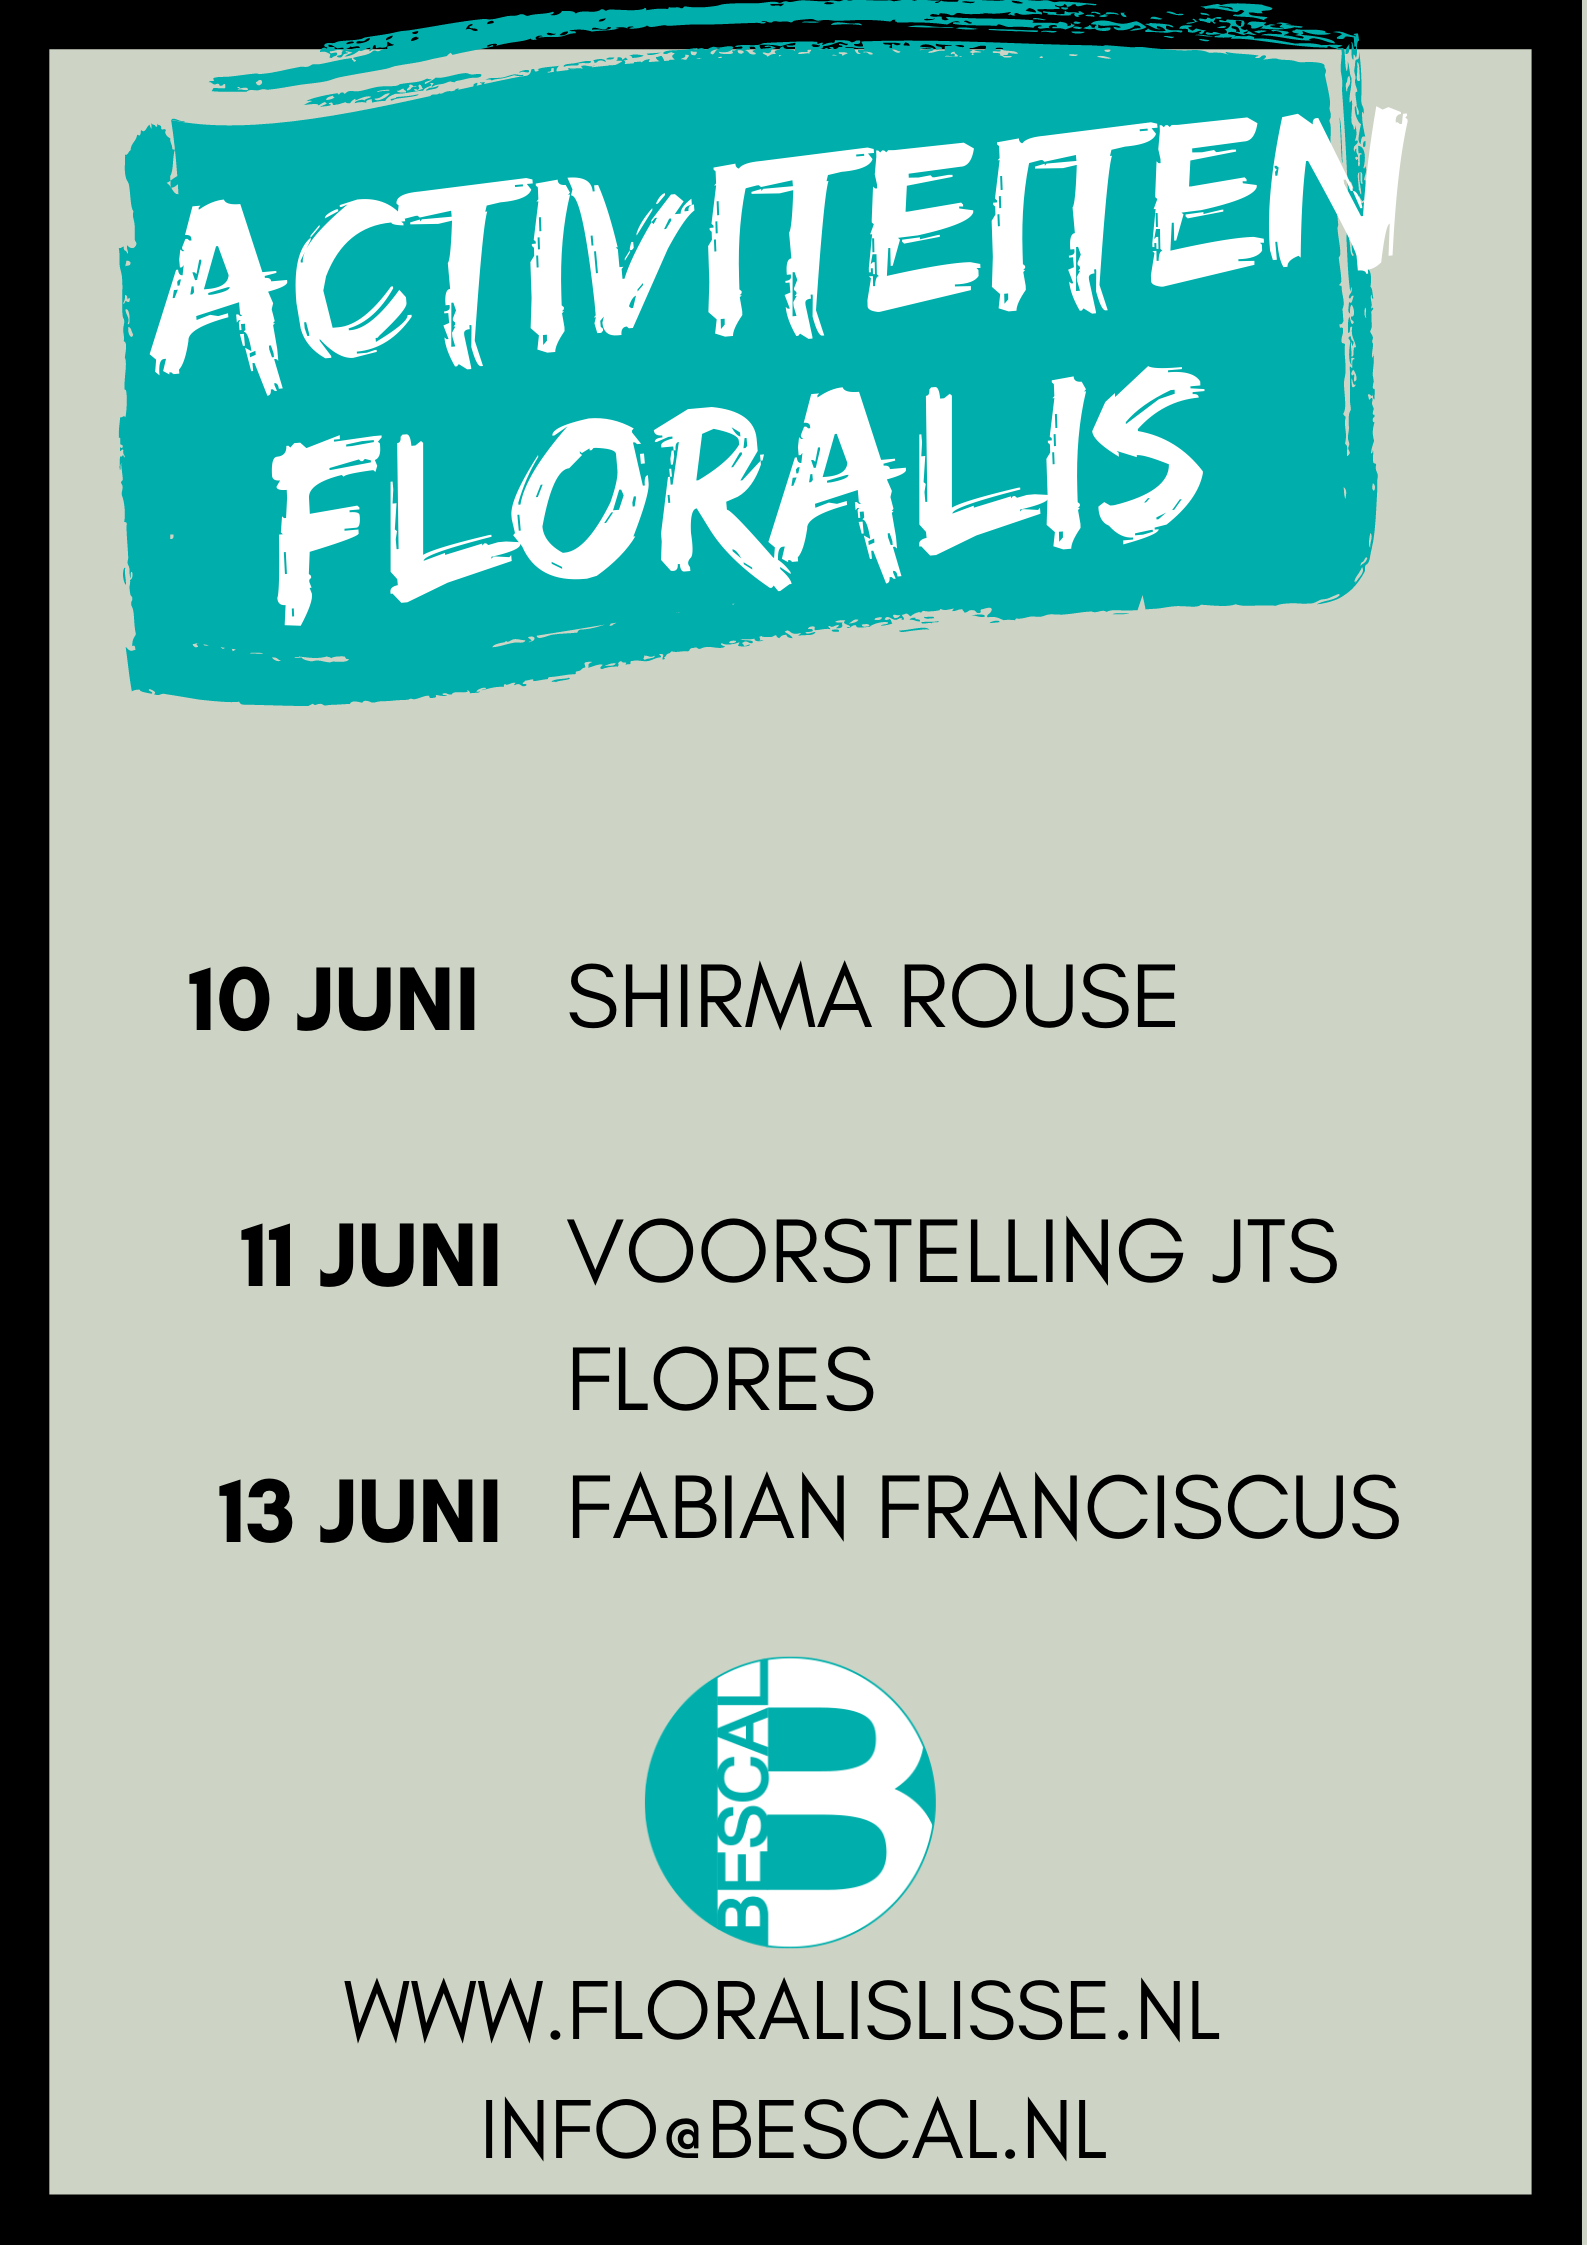 Floralis activiteiten in juni